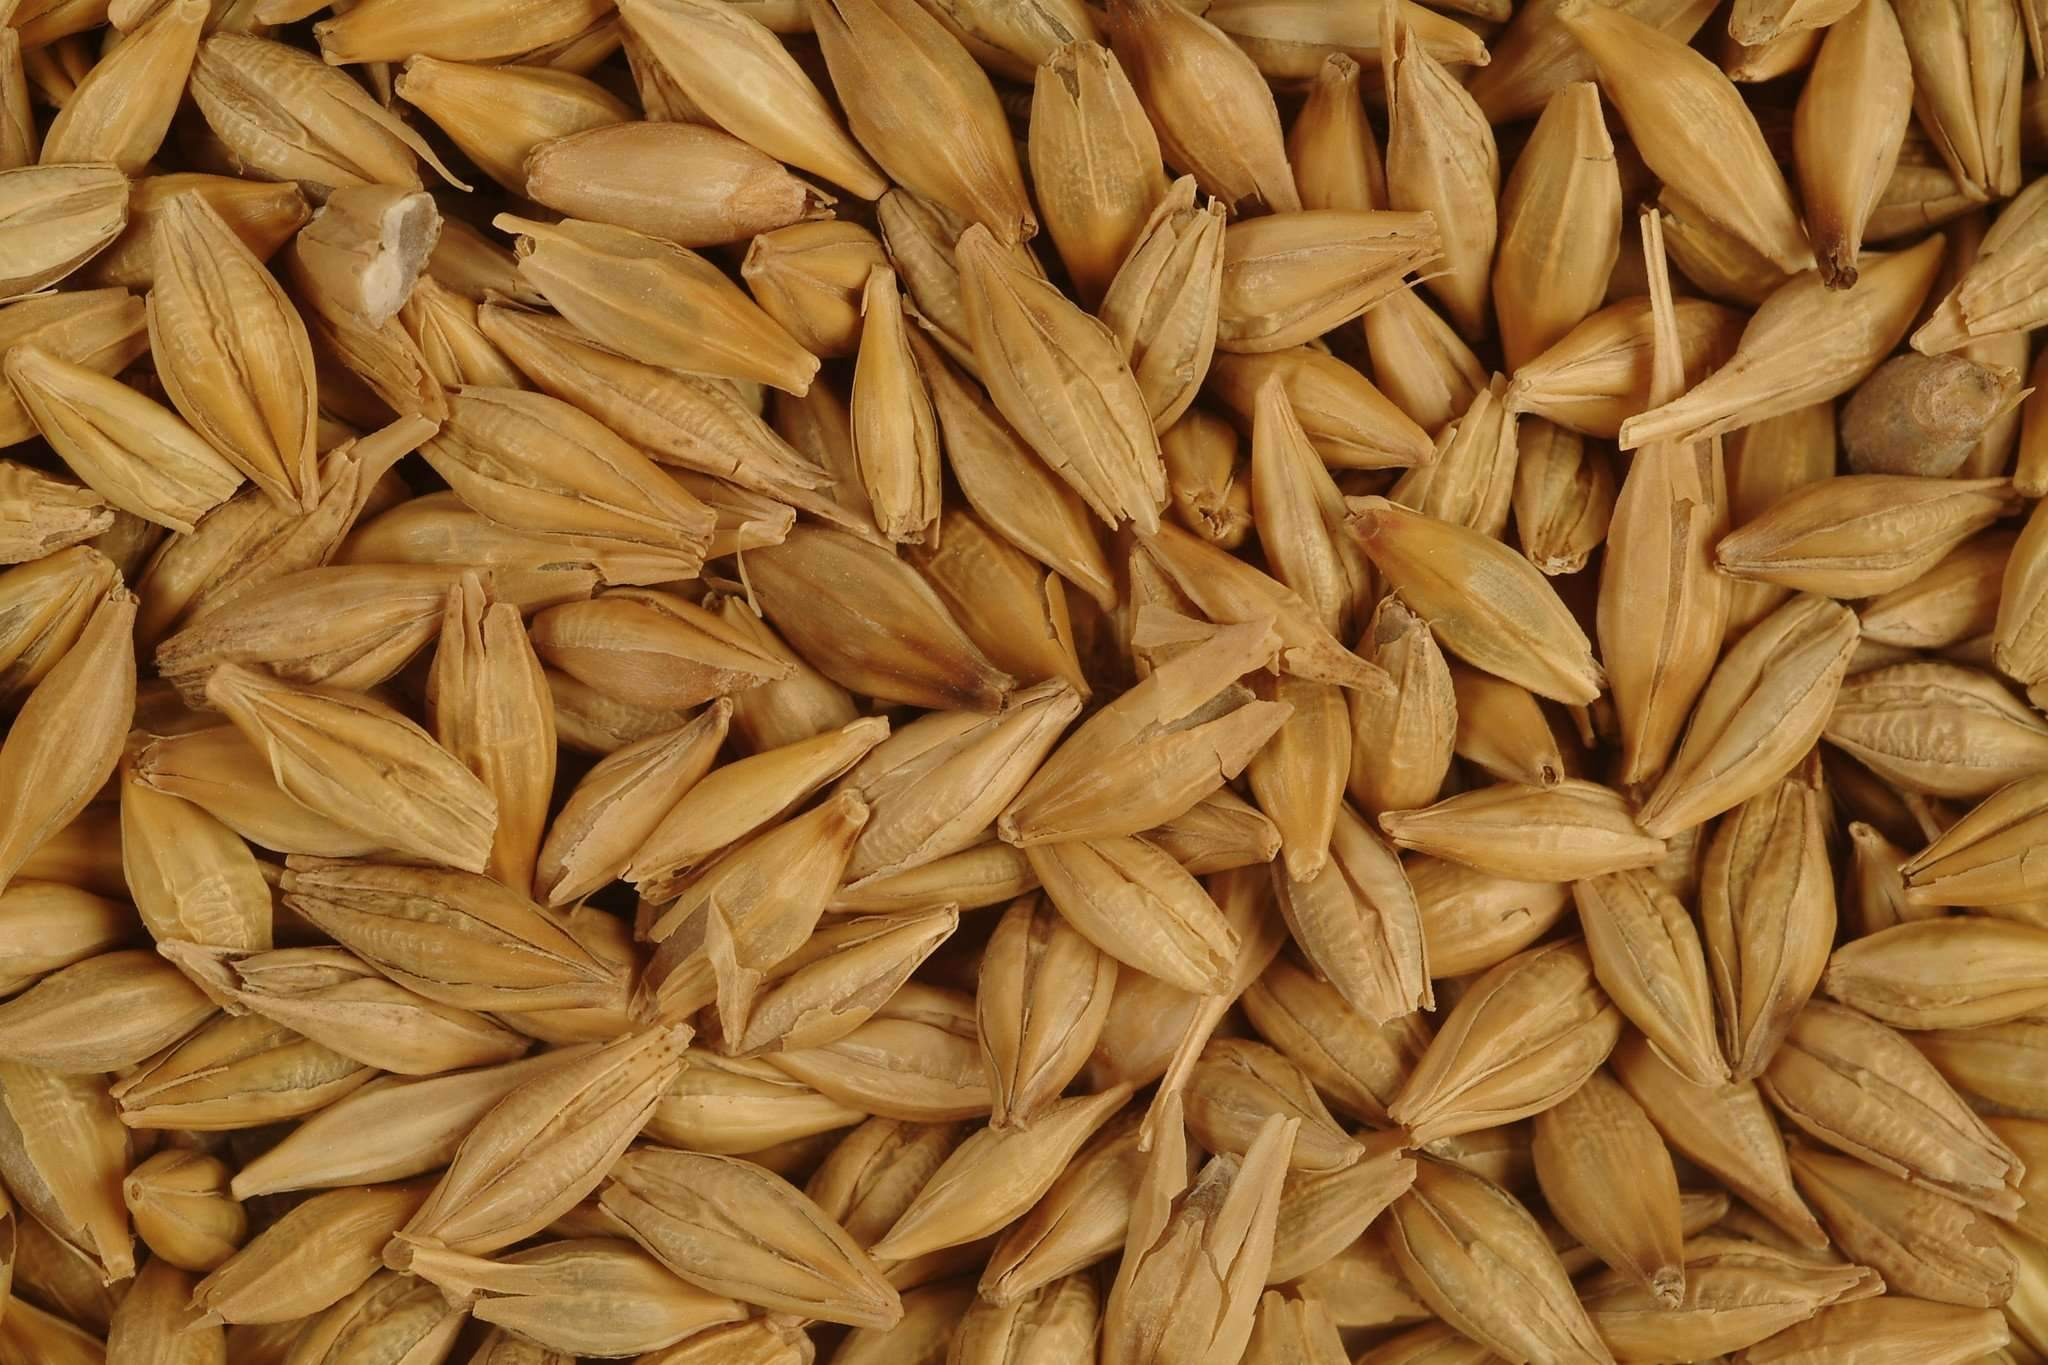 Jaun (Barley) | www.poshtik.in